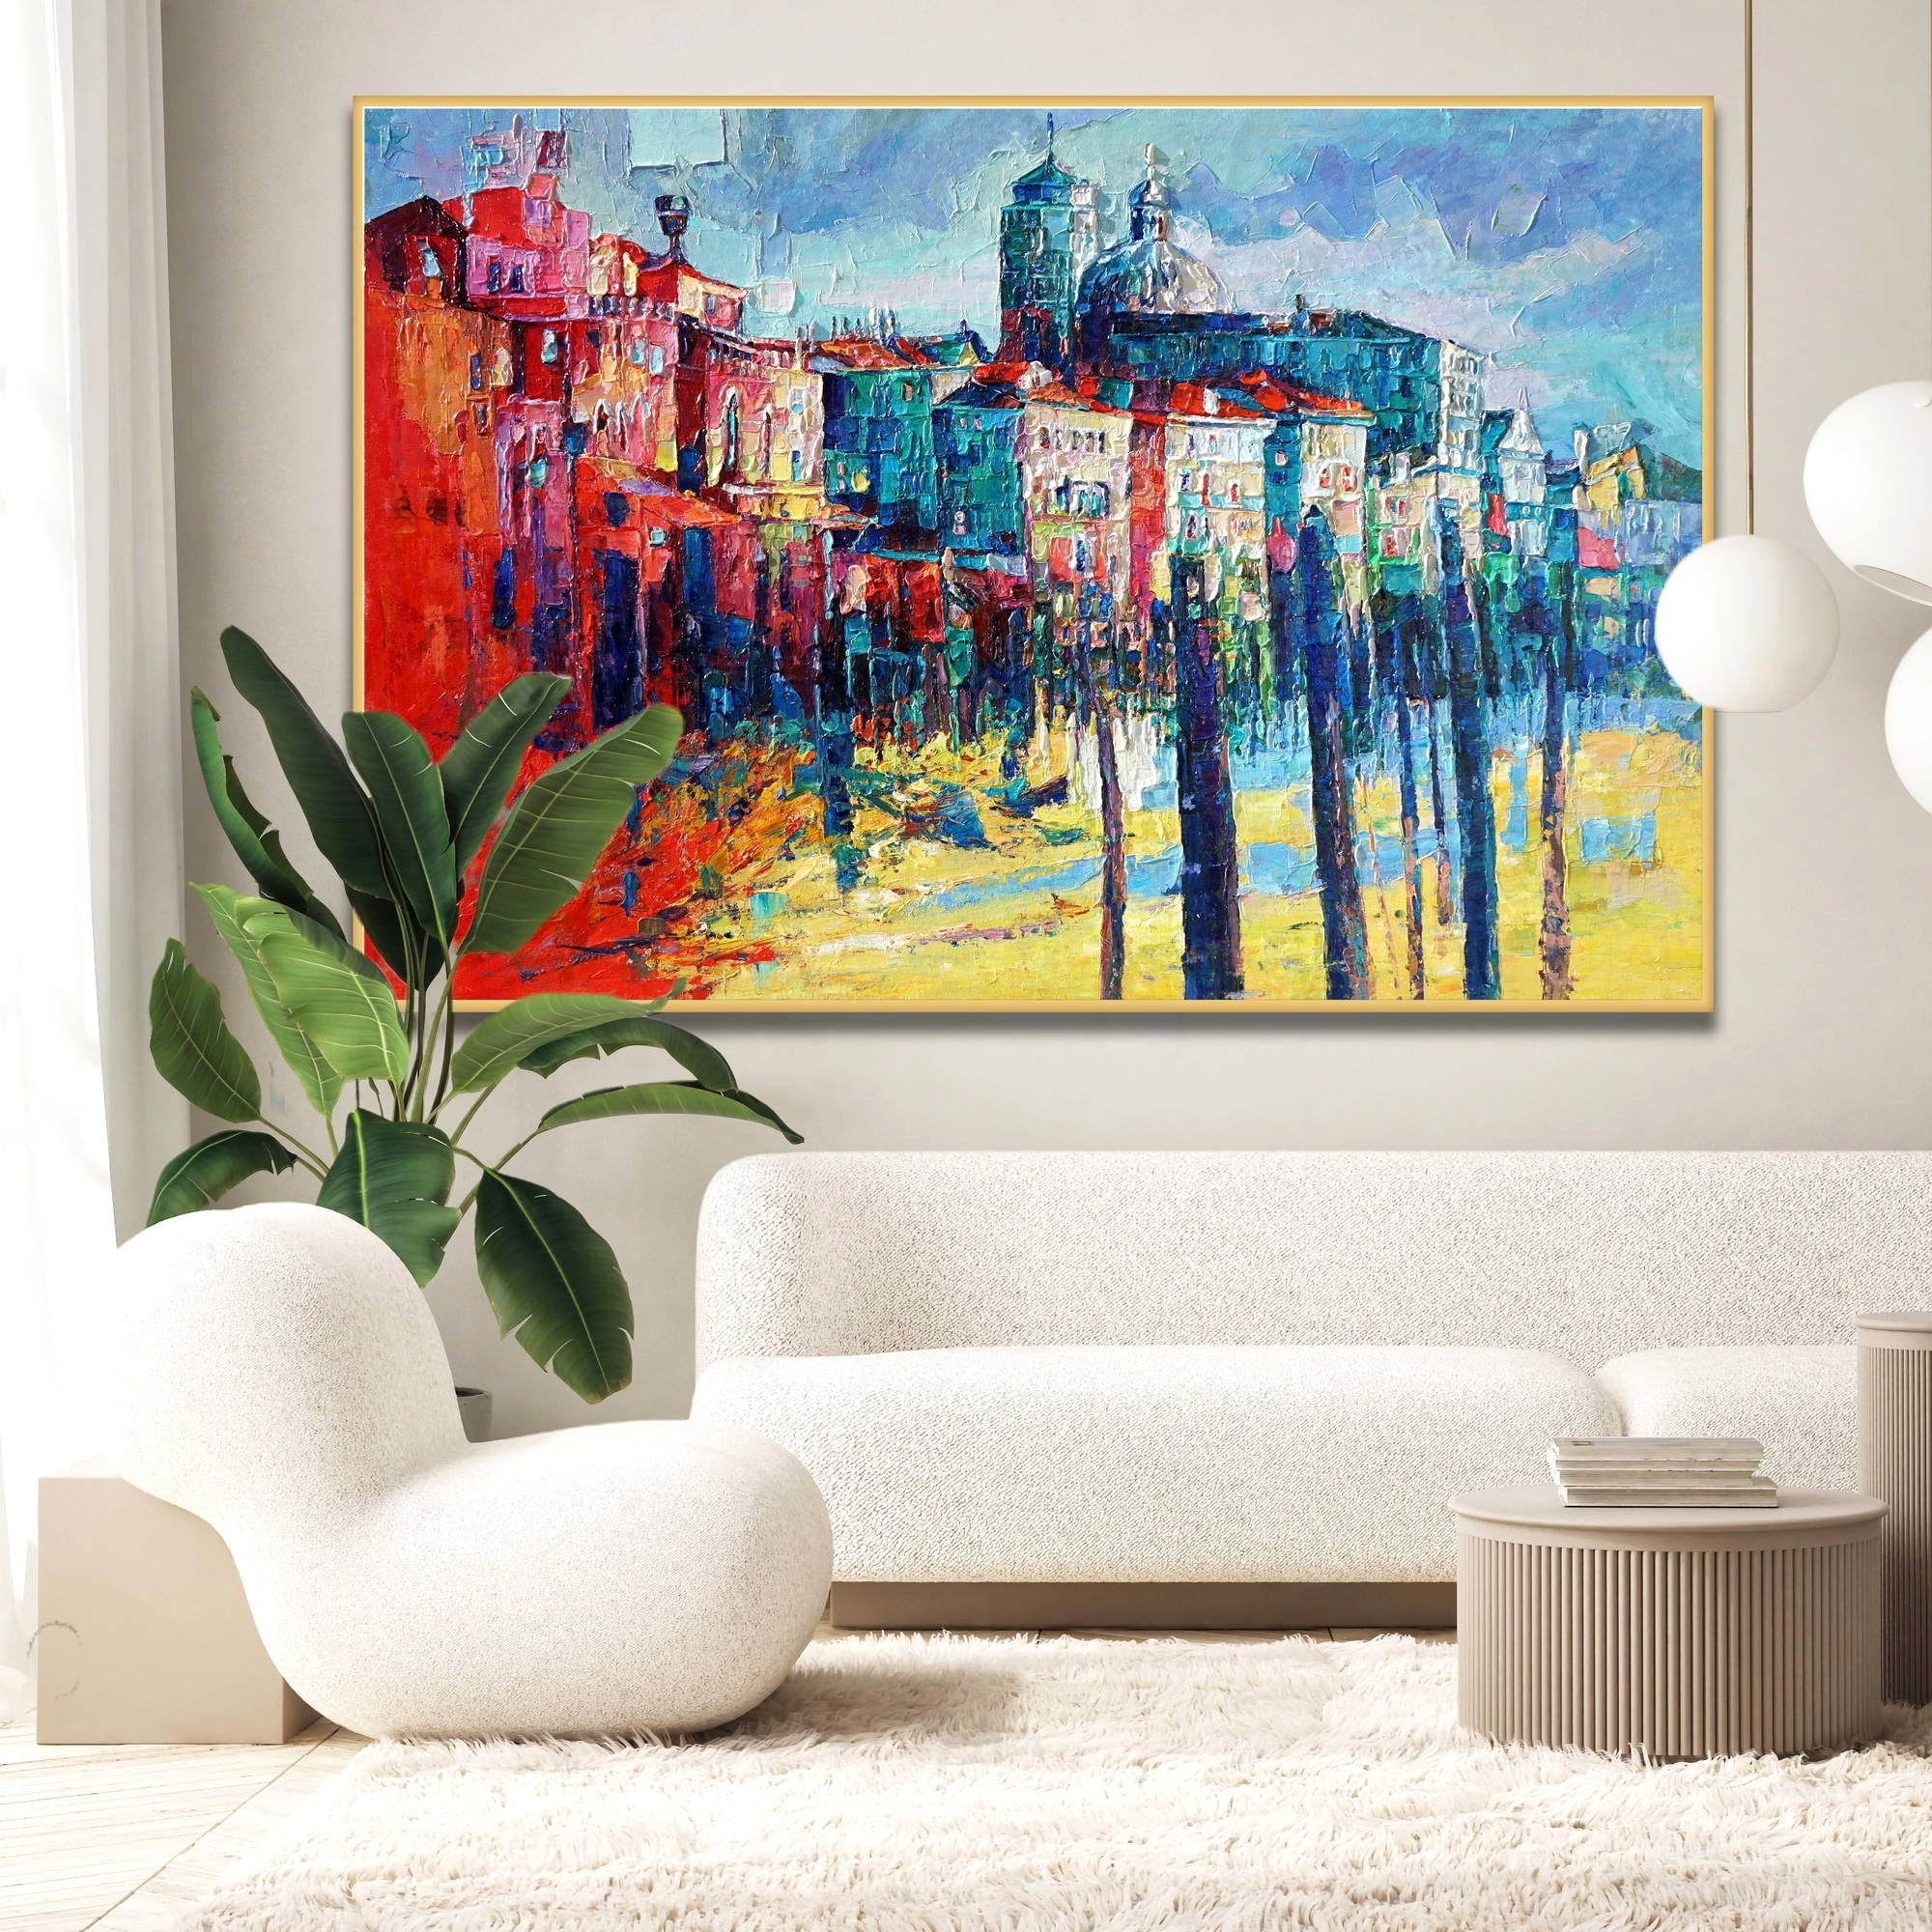 Dipinto di una scena urbana colorata con stile espressionista